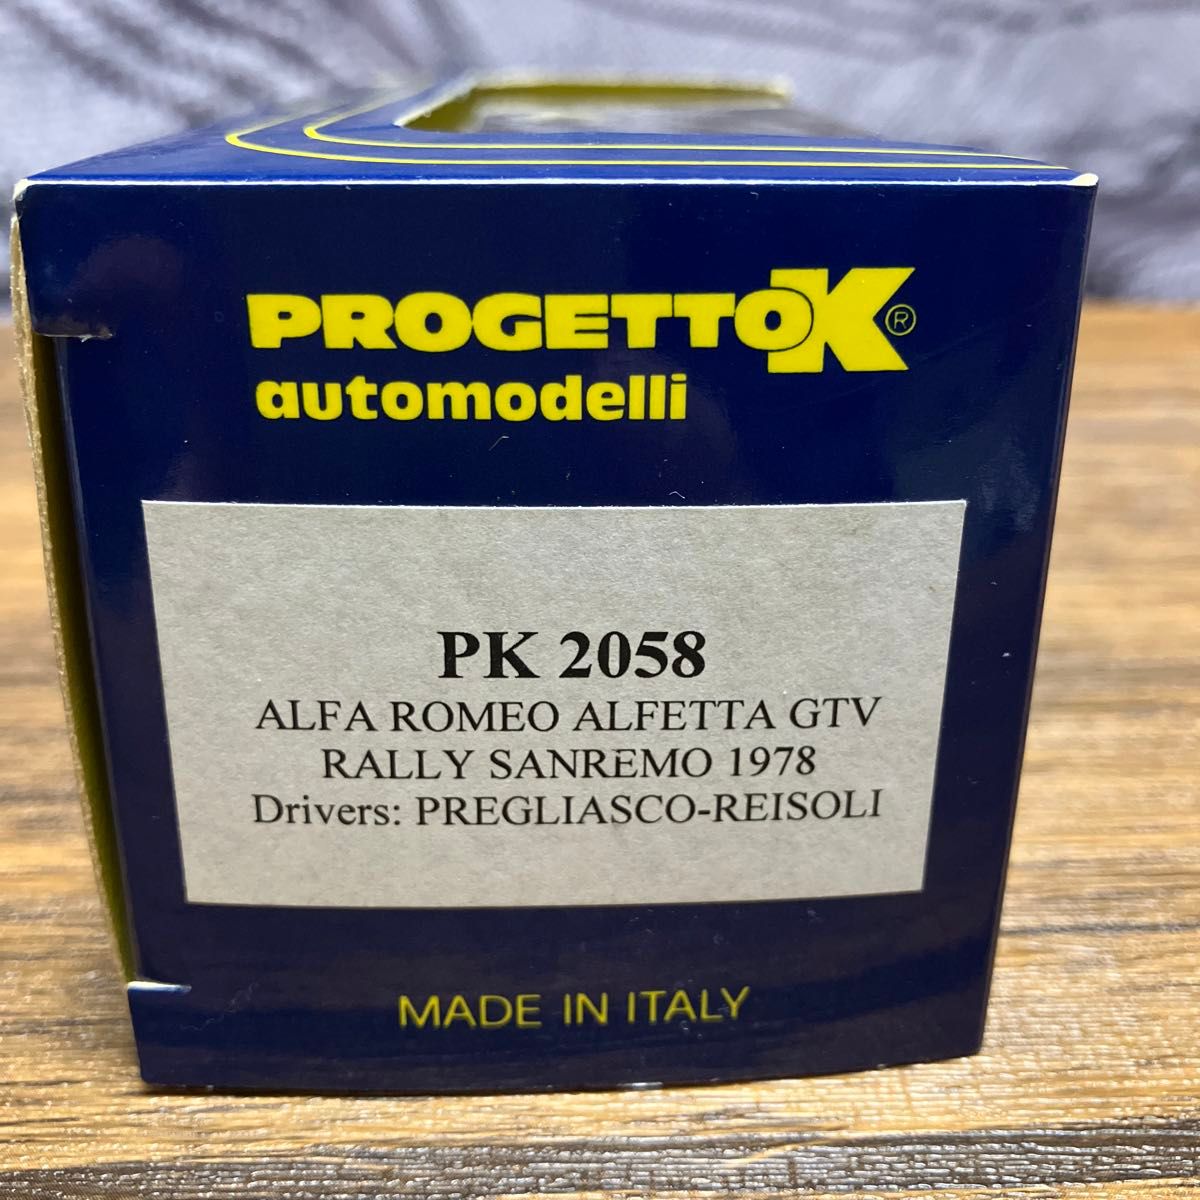 PROGETTO K 1/43 アルファロメオ アルフェッタ GTV RALLY SANREMO 1978 絶版希少 ミニカー